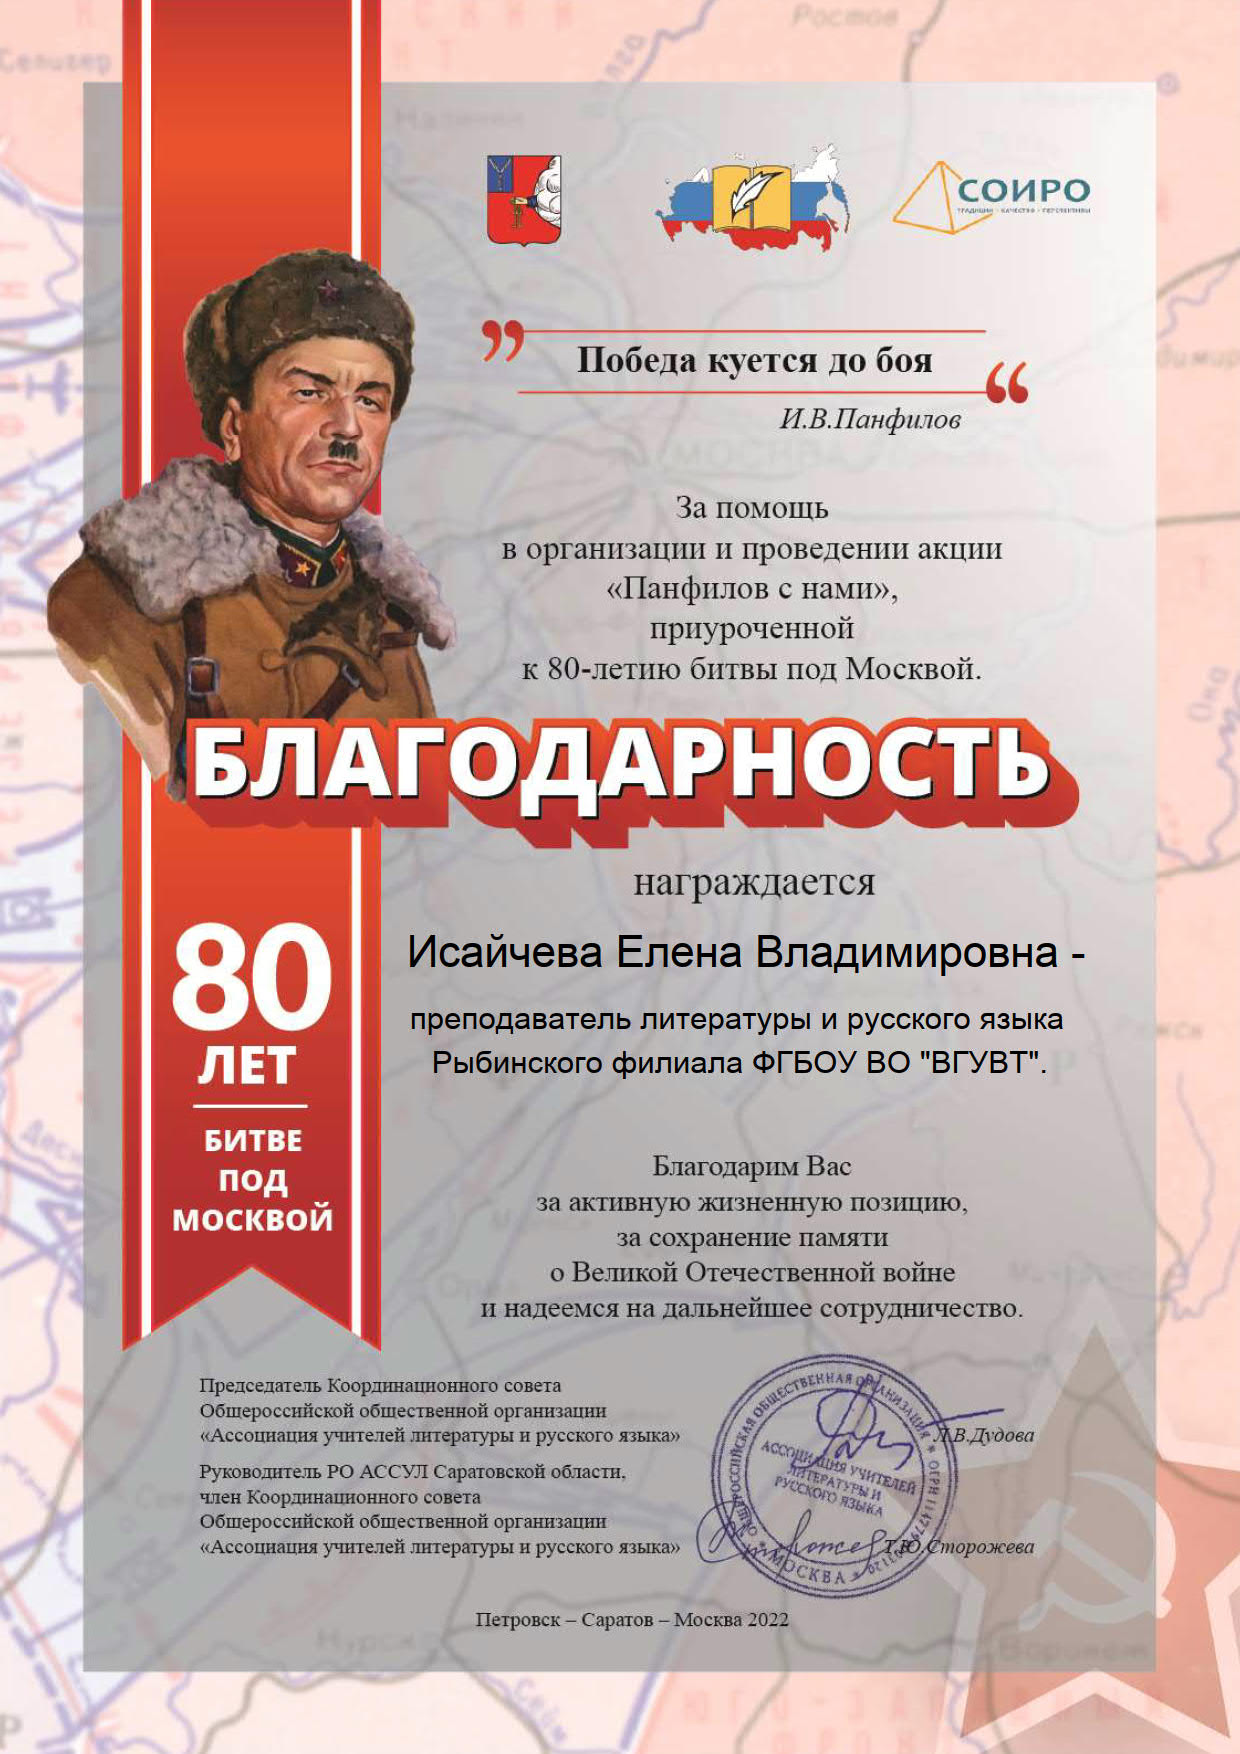 Международная акция «Панфилов с нами», приуроченная к 80-летию битвы под Москвой